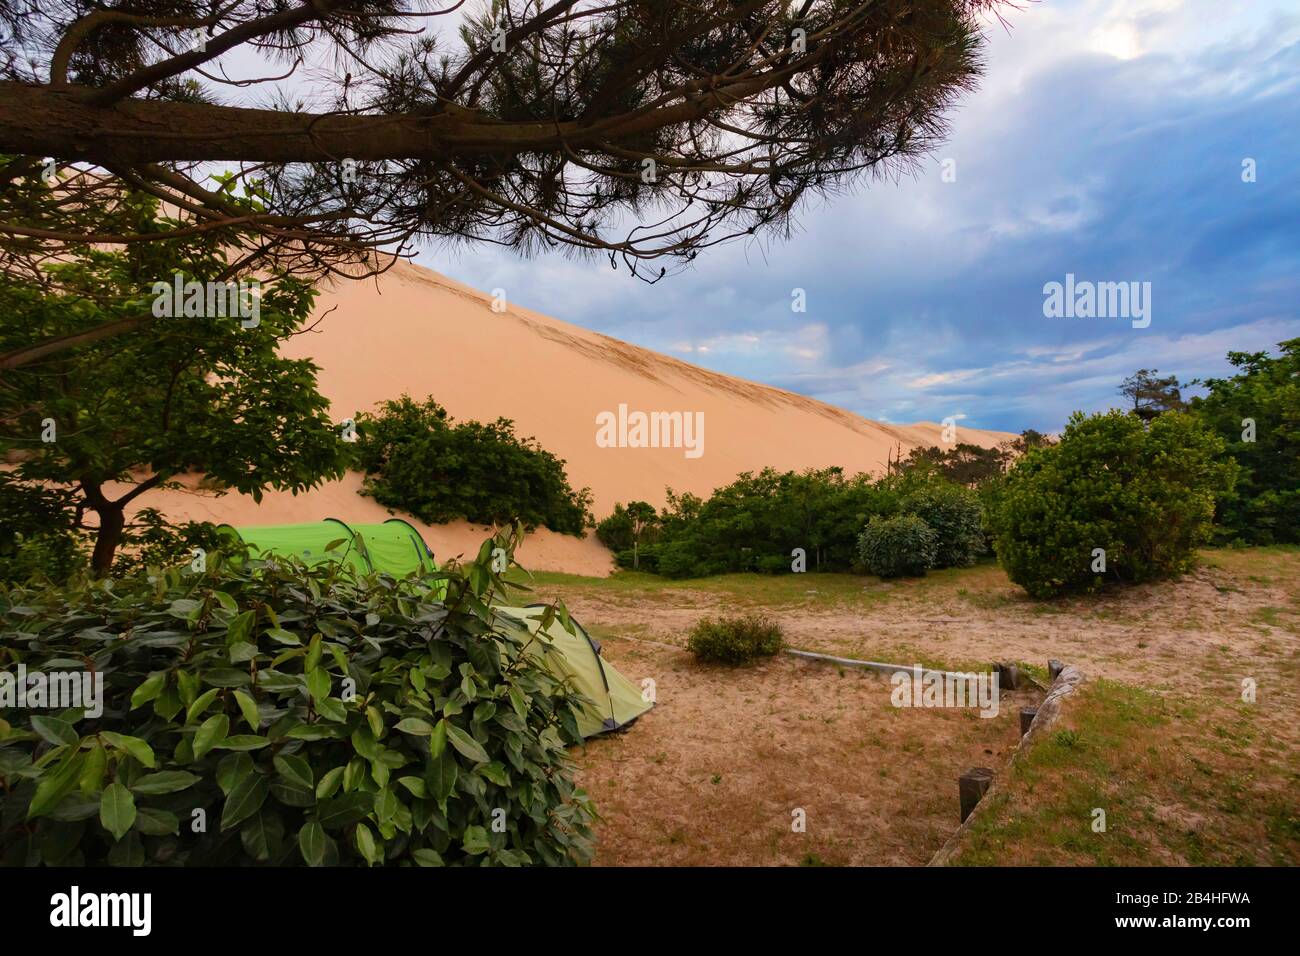 Die Düne von Pilat an der Atlantikküste, die höchste Sanddüne Europas, Frankreich, Bordeaux, La Teste-de-Buch, Arcachon Stockfoto